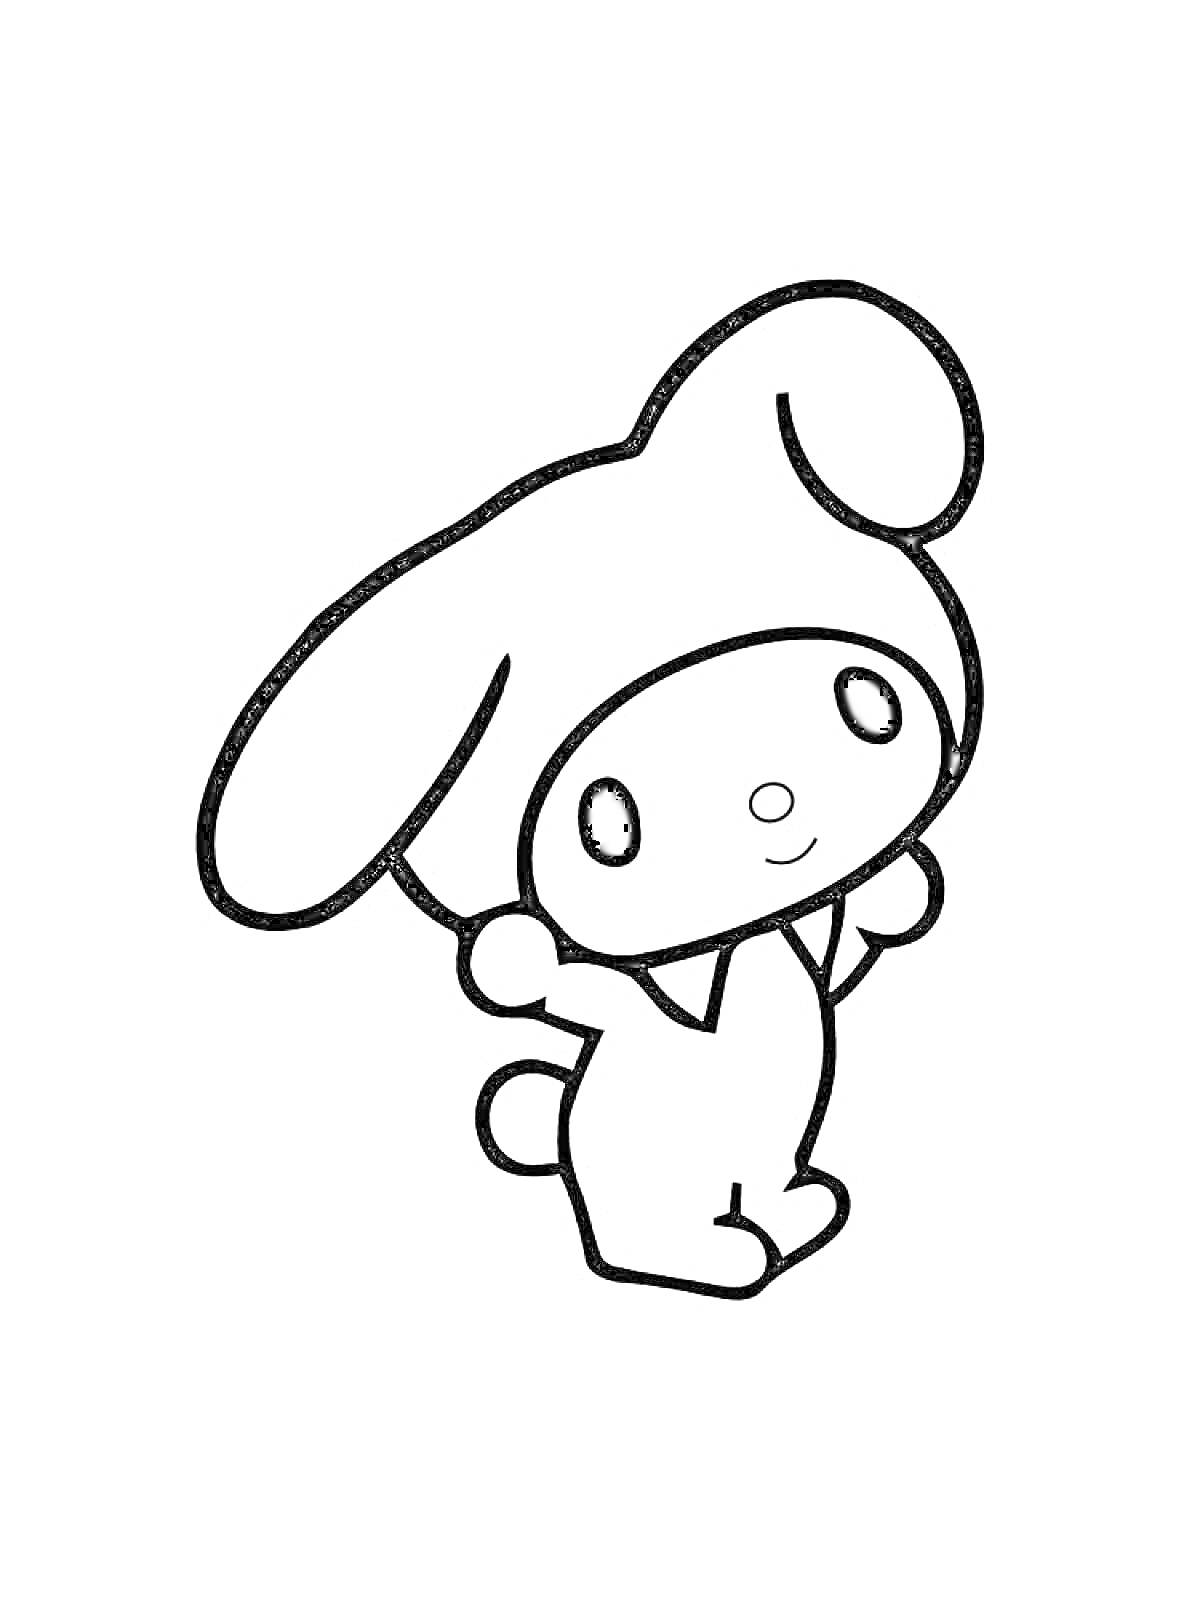 Раскраска Кролик с большими ушами, стоящий на задних лапках